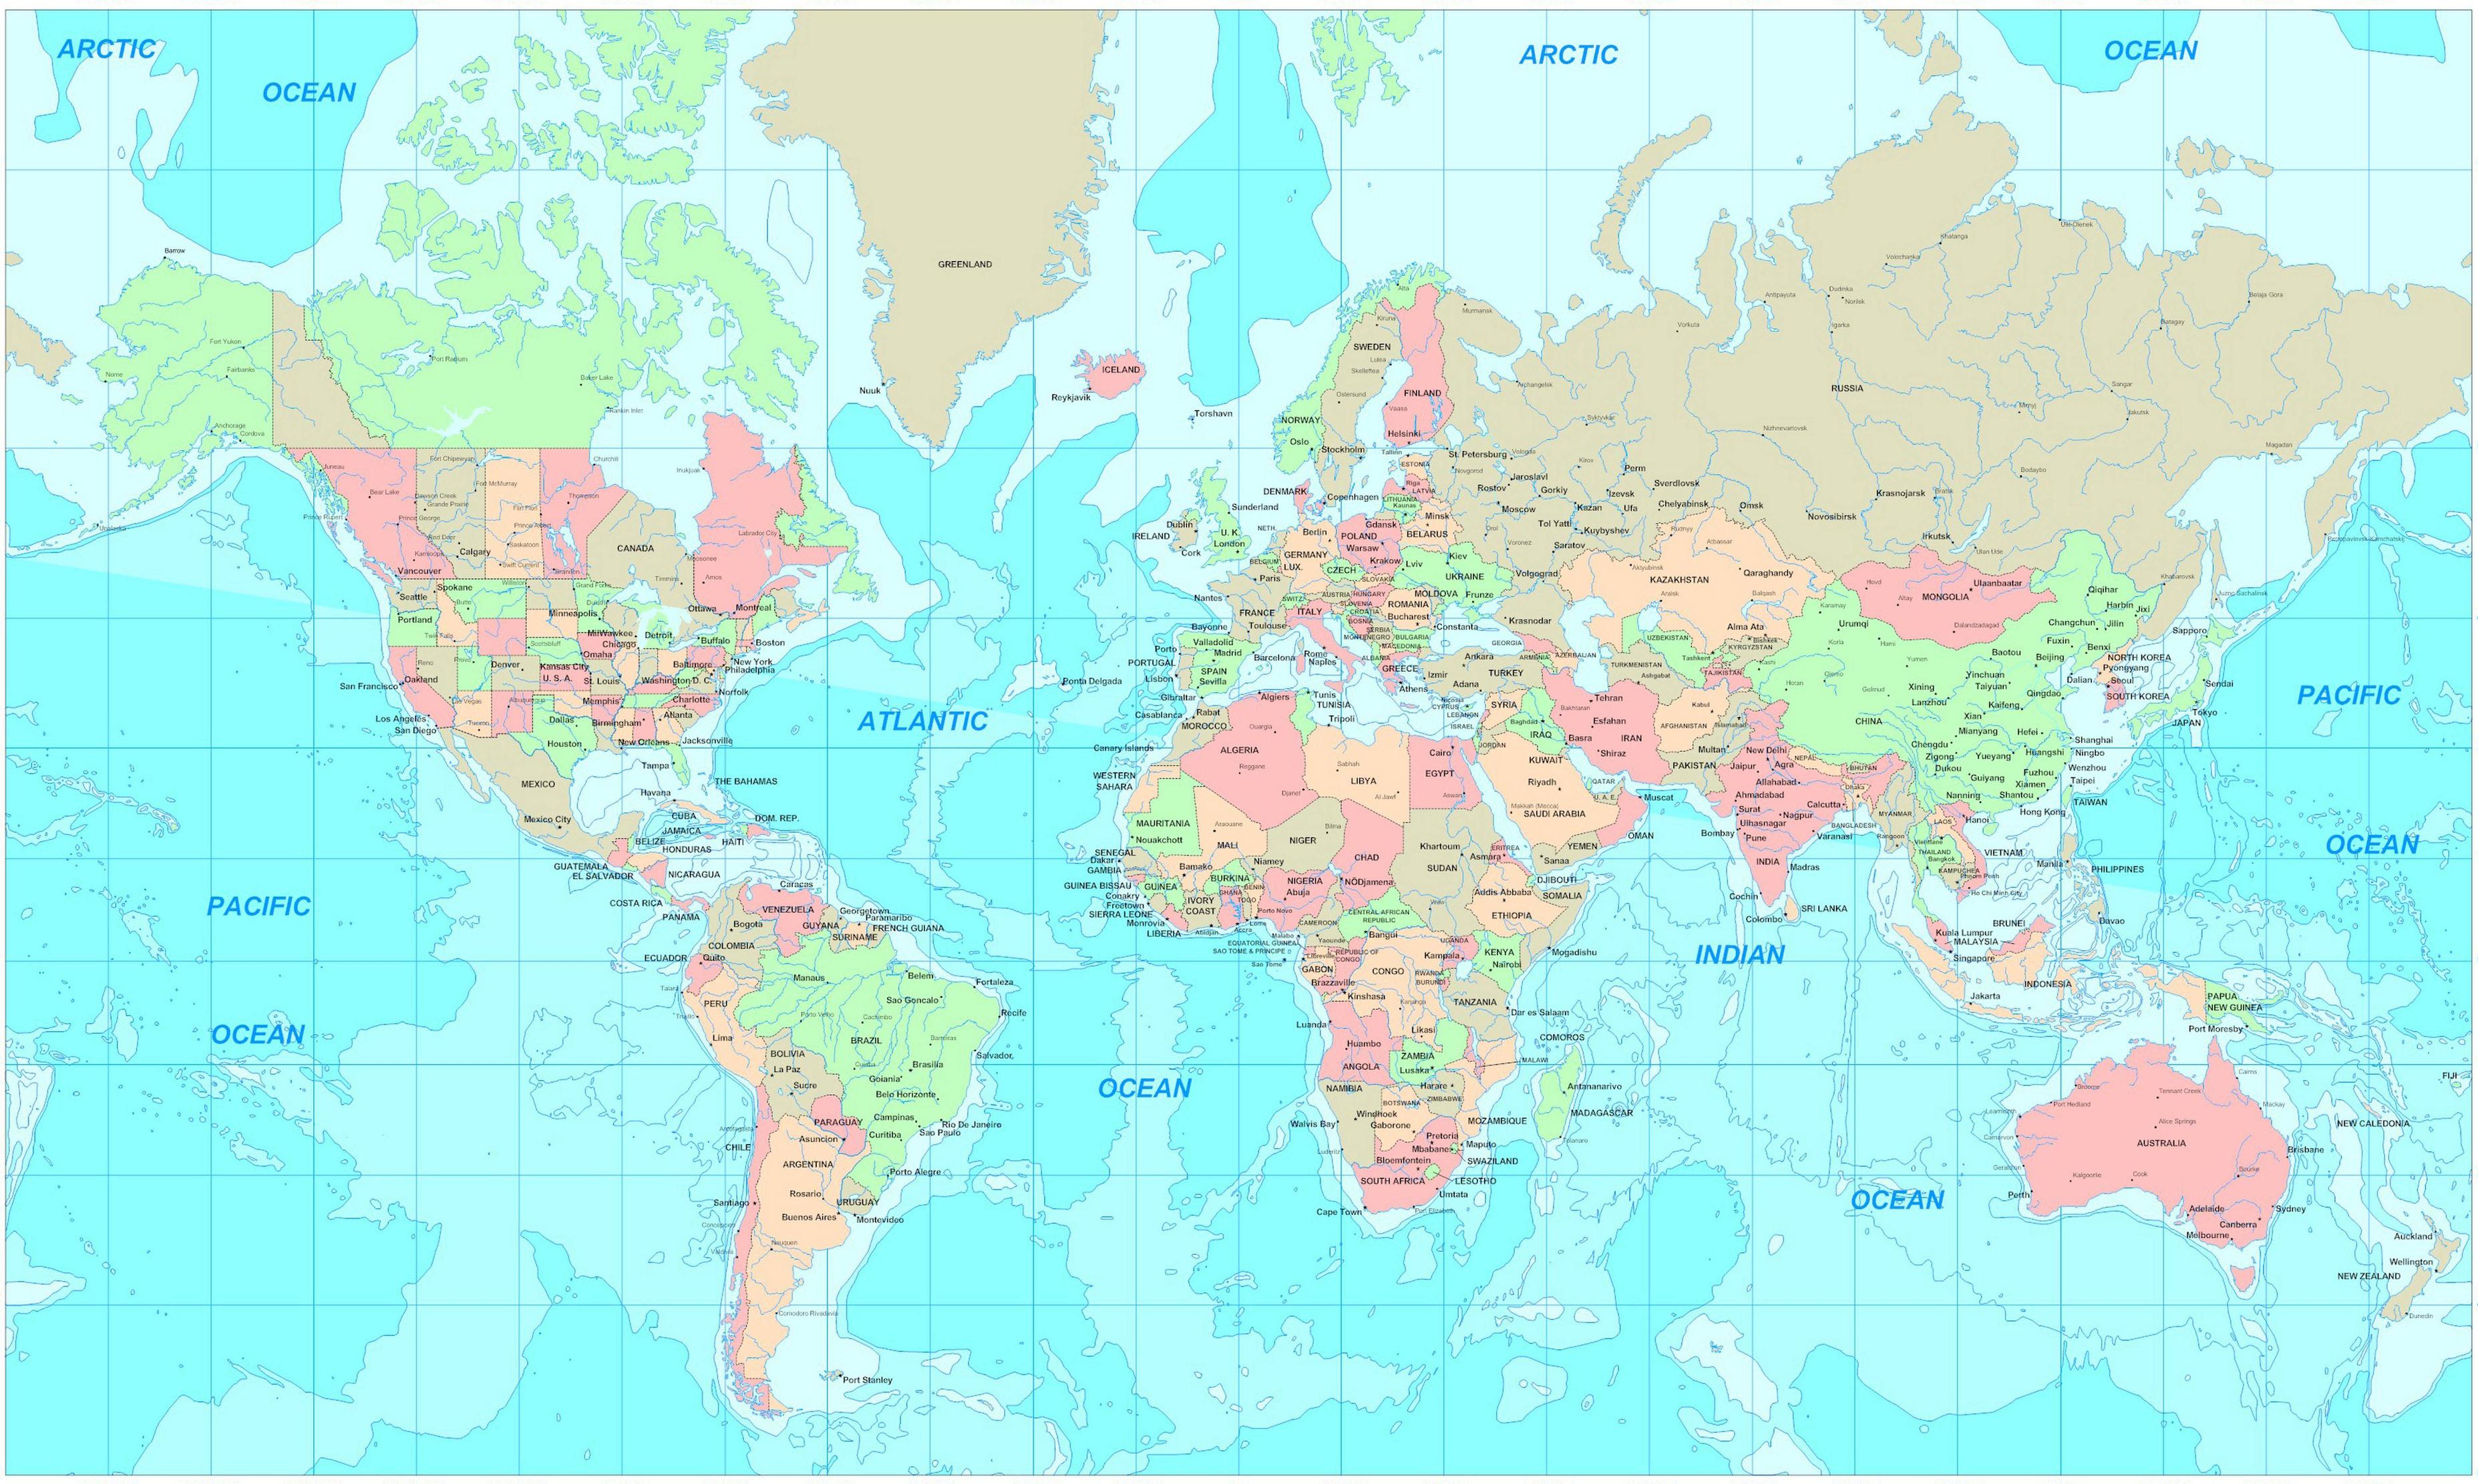 Hd Wallpapers World Map Pixelstalknet